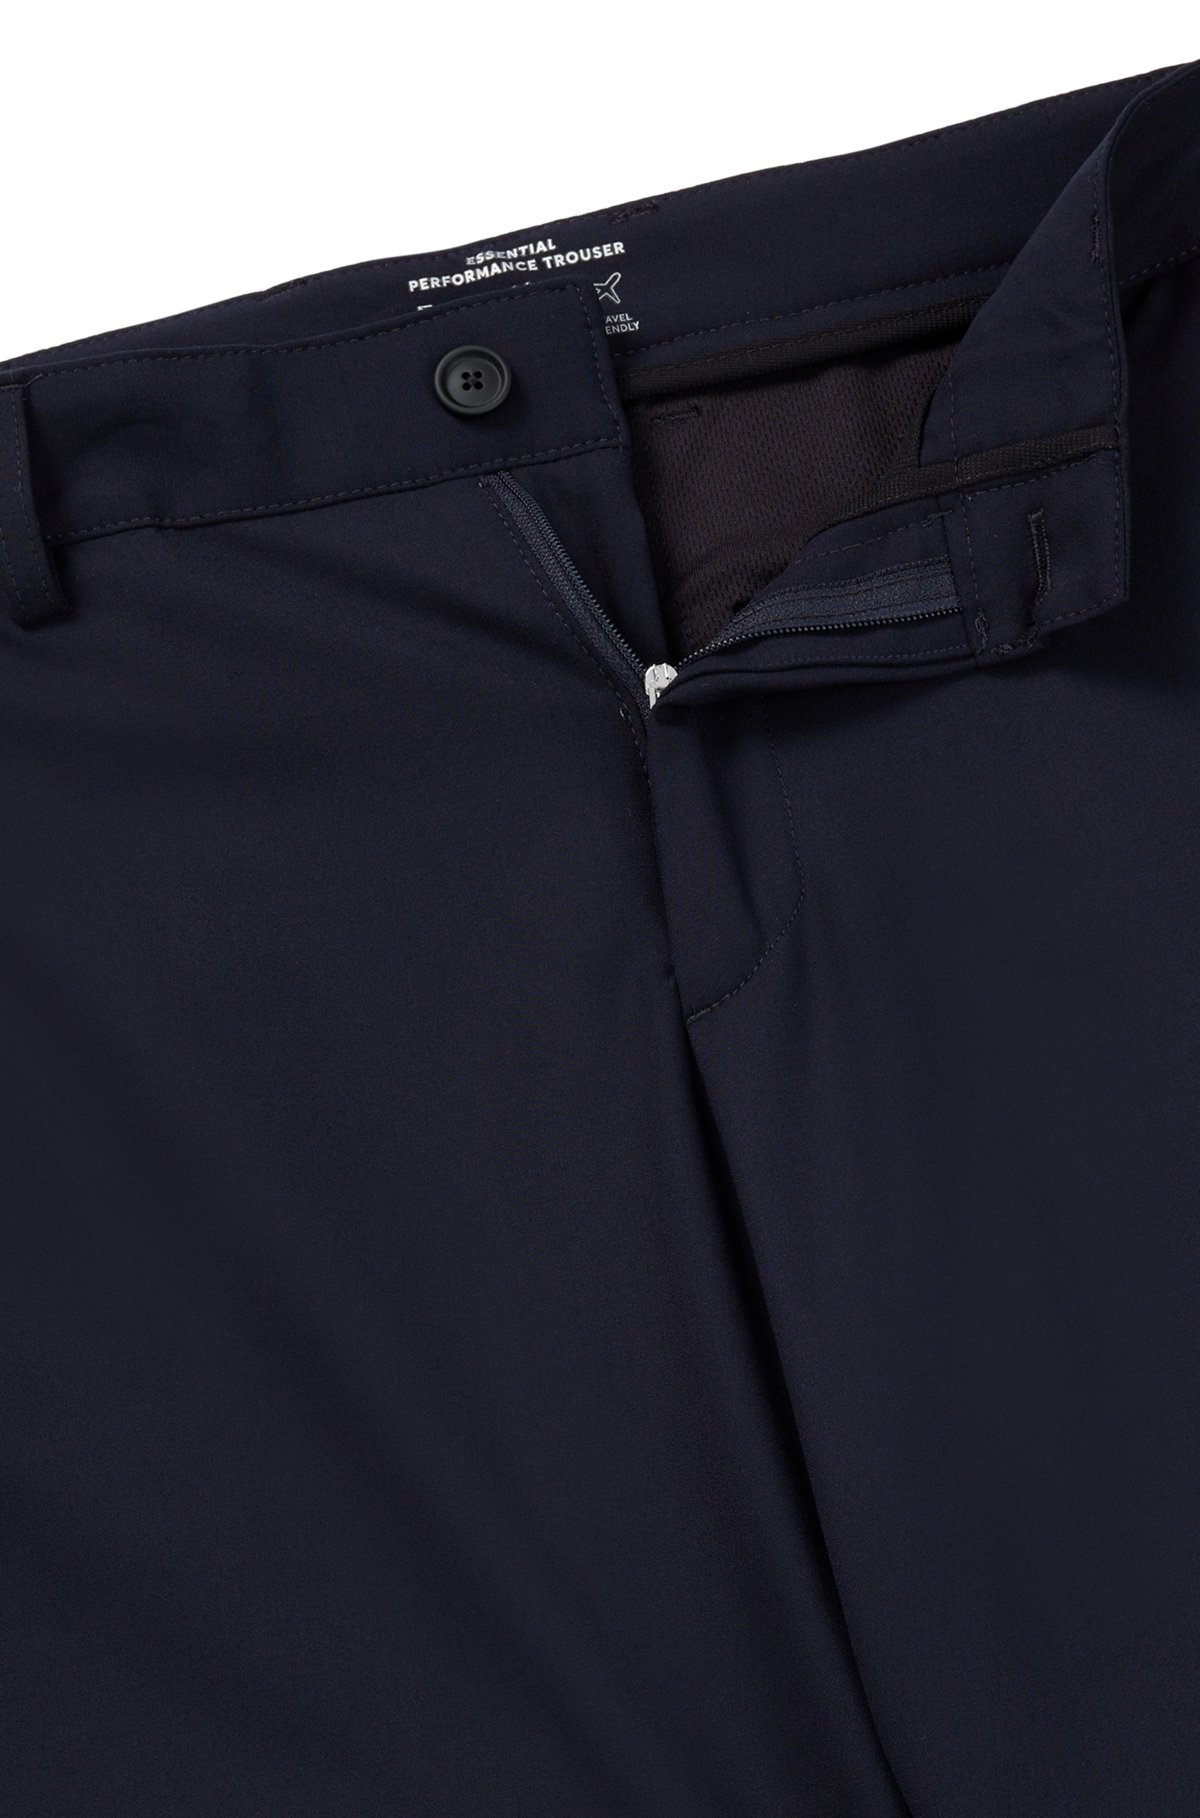 Pantalon Slim Fit en tissu stretch performant à micro motif, Bleu foncé